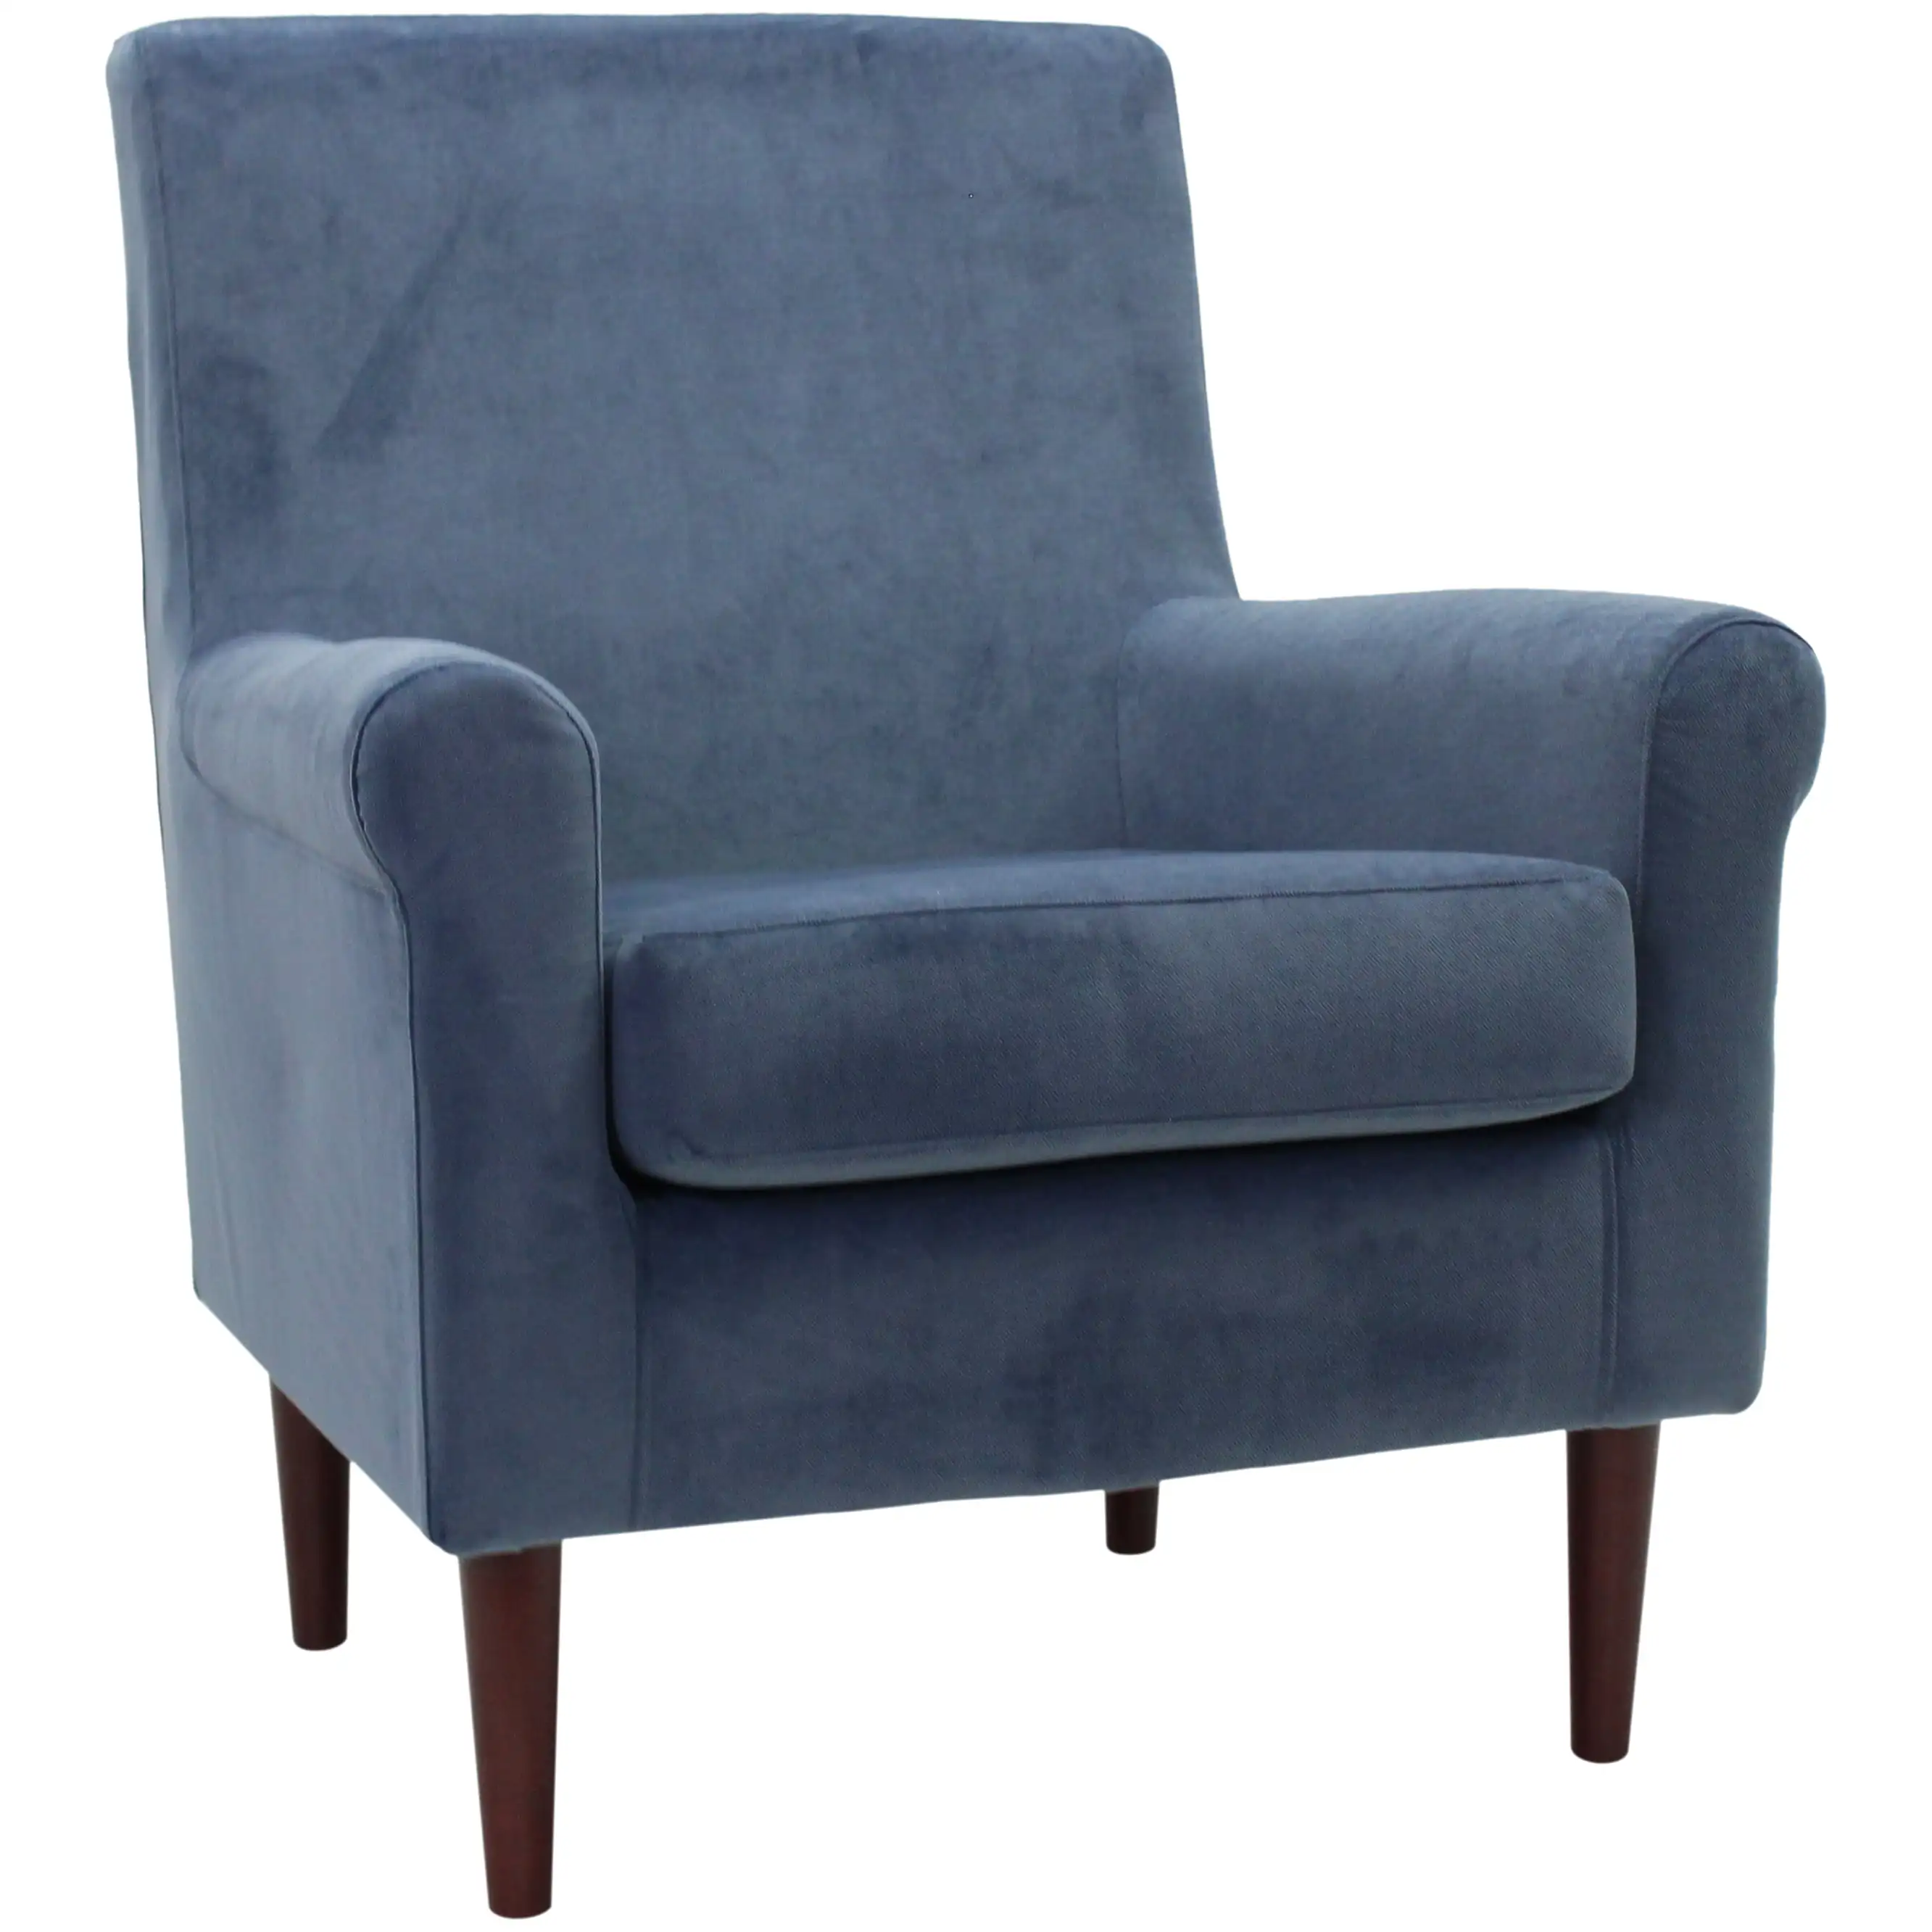 

Кресло для отдыха mainstay Raelynn, кресло для гостиной, бархатное кресло, кресло для одного дивана, мебель